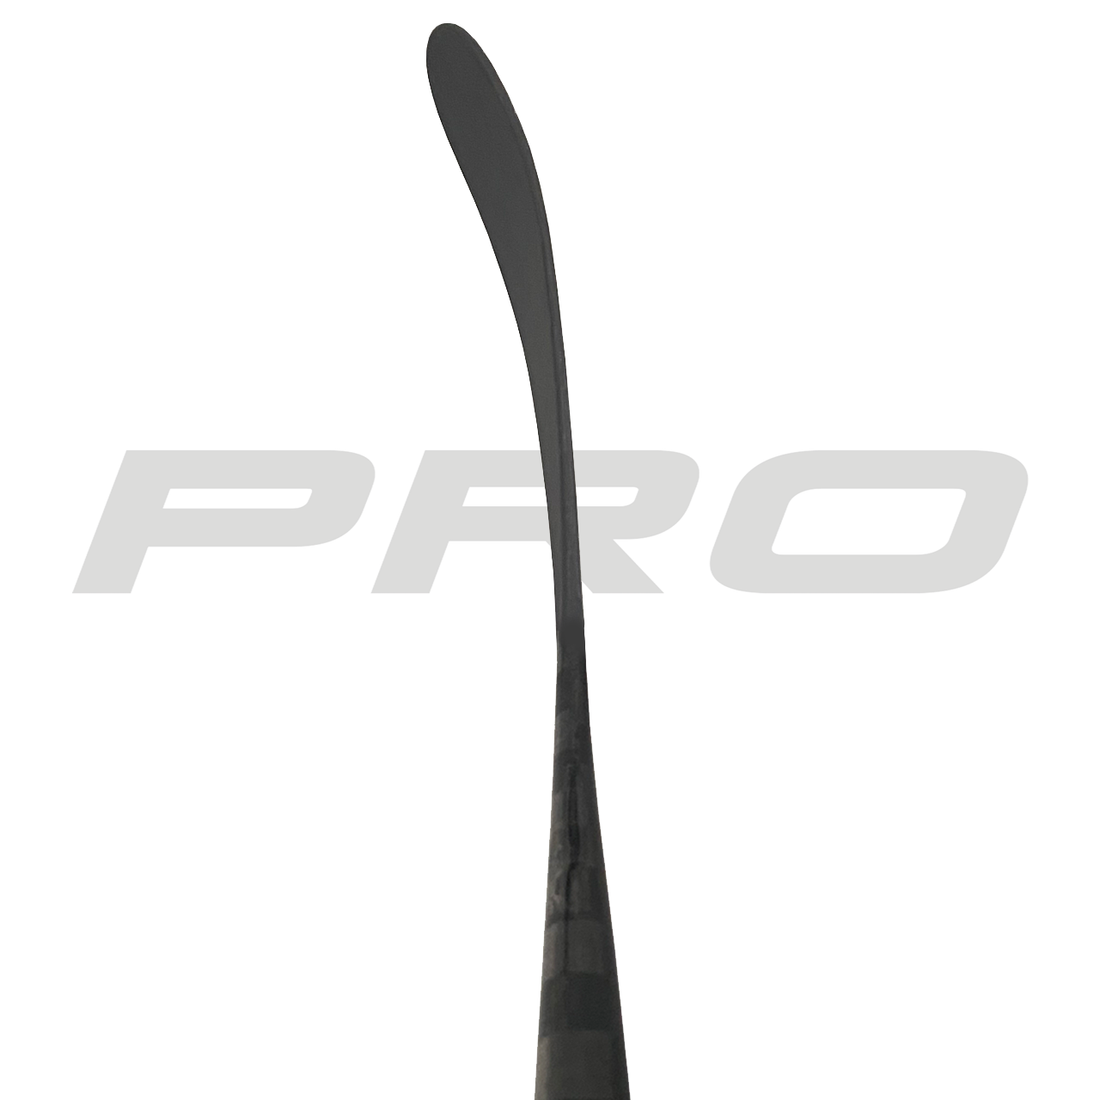 PRO272 (ST: Kovalev Pro) - Red Line (375 G) - Pro Stock Hockey Stick - Right